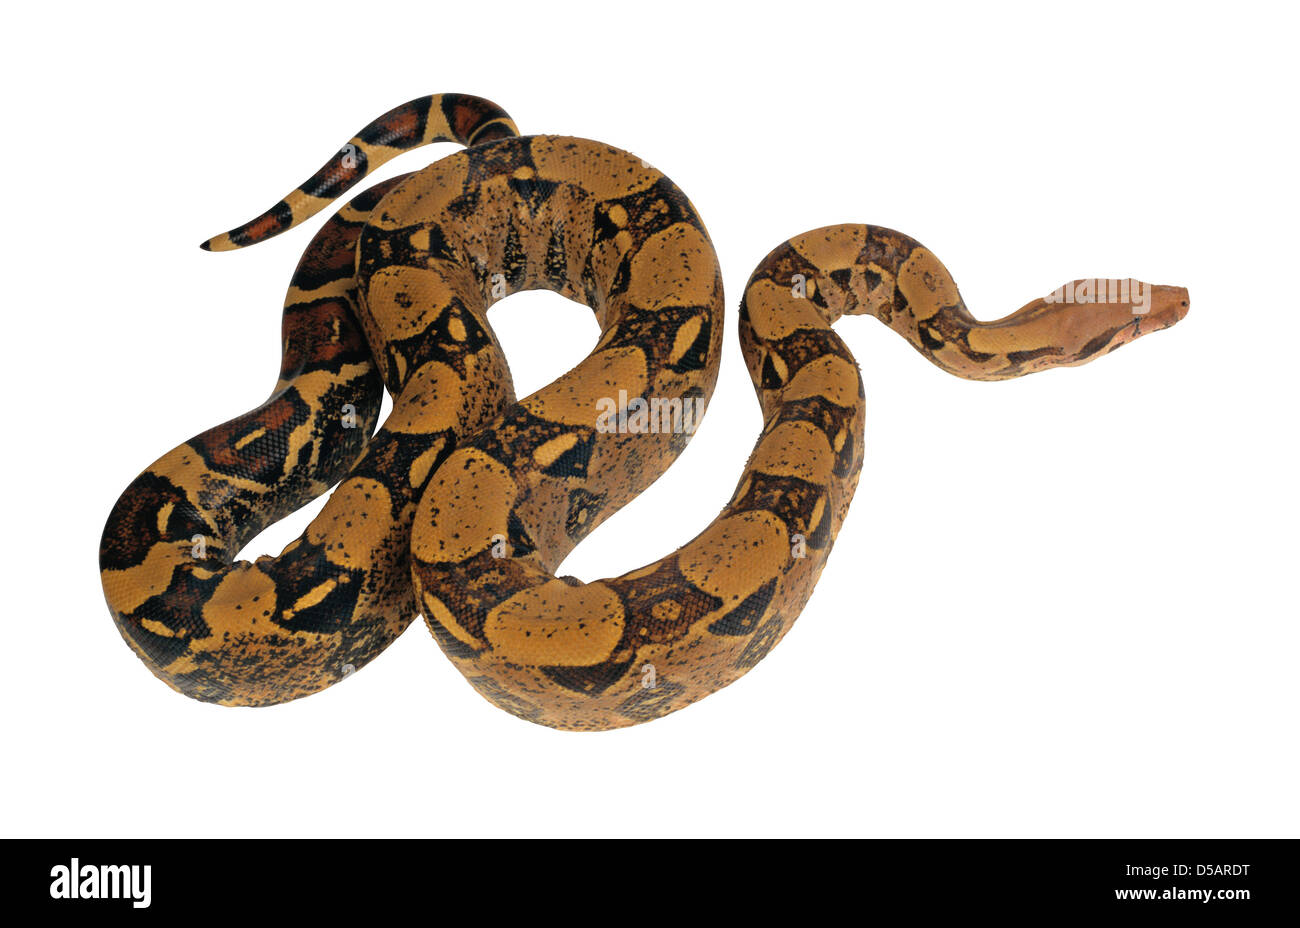 Snake on white Stock Photo